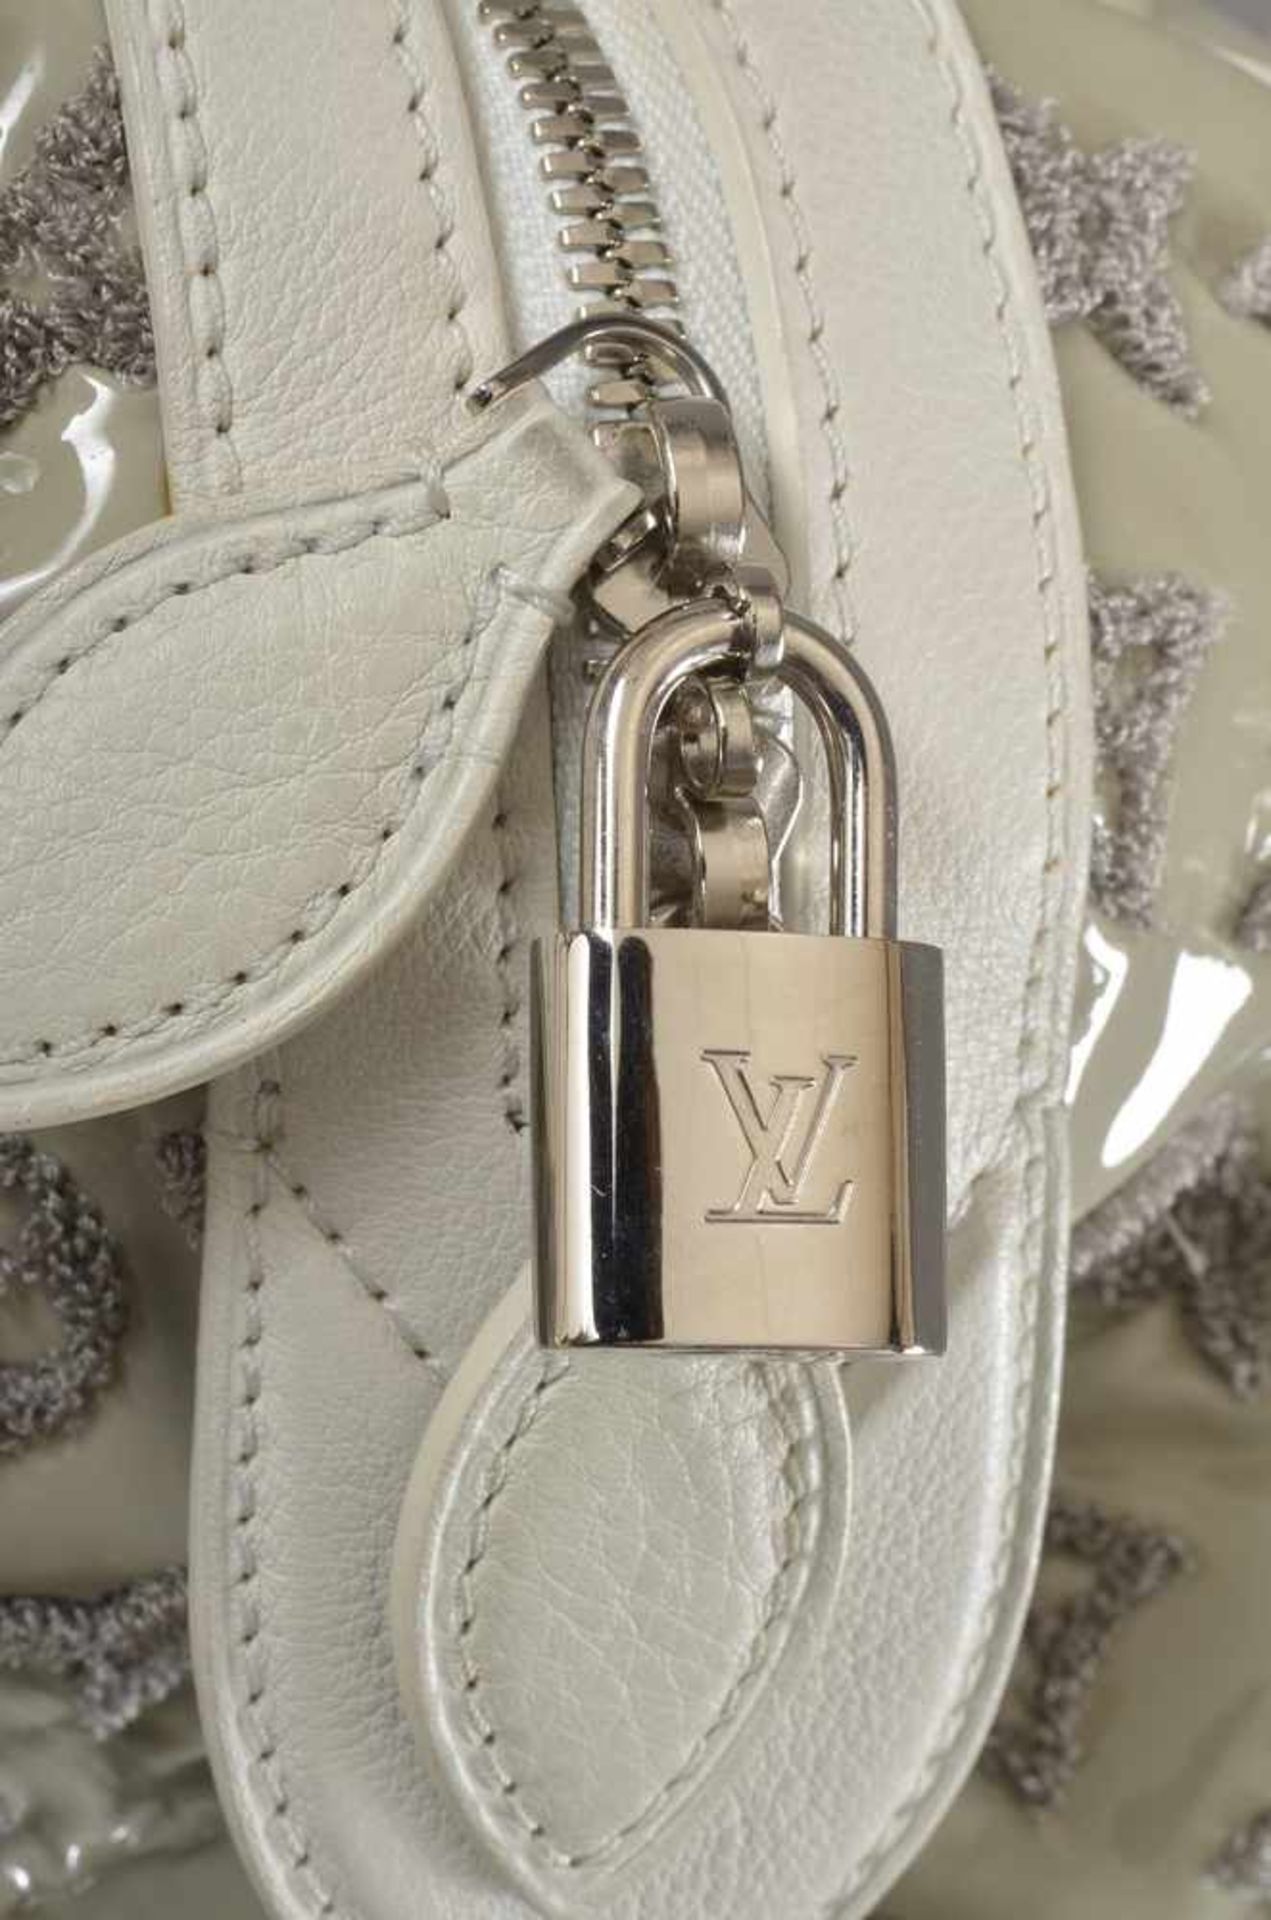 Louis Vuitton "Speedy Round" Tasche, Lack mit Stoffmonogramm in Gris Art Deco mit weißem Leder, LV - Image 2 of 3